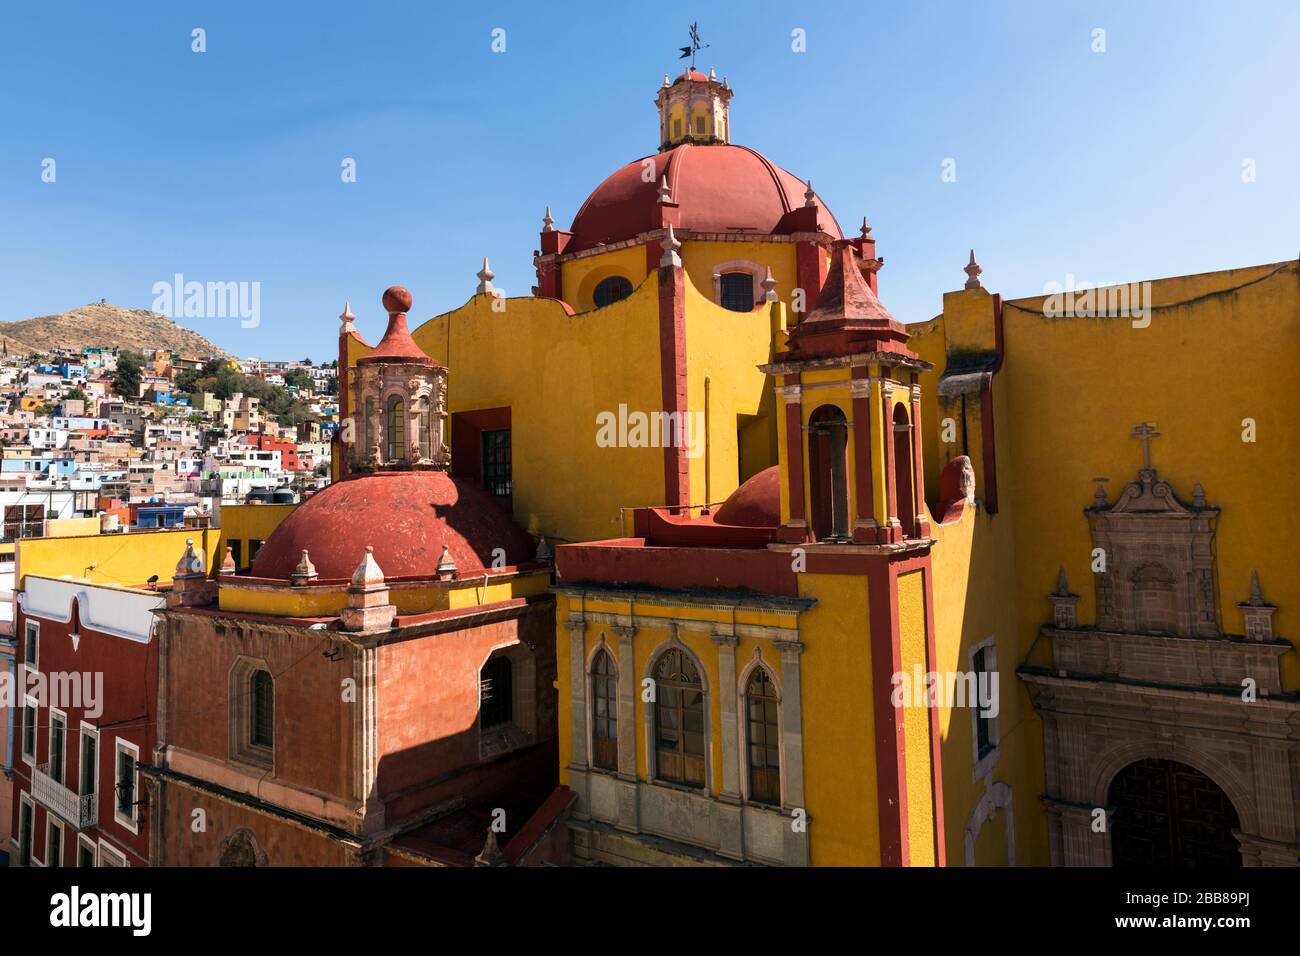 México, Guanajuato, la Basïlica de nuestra Seńora de Guanjuato, la iglesia principal de la ciudad. Arquitectura colonial española. Foto de stock